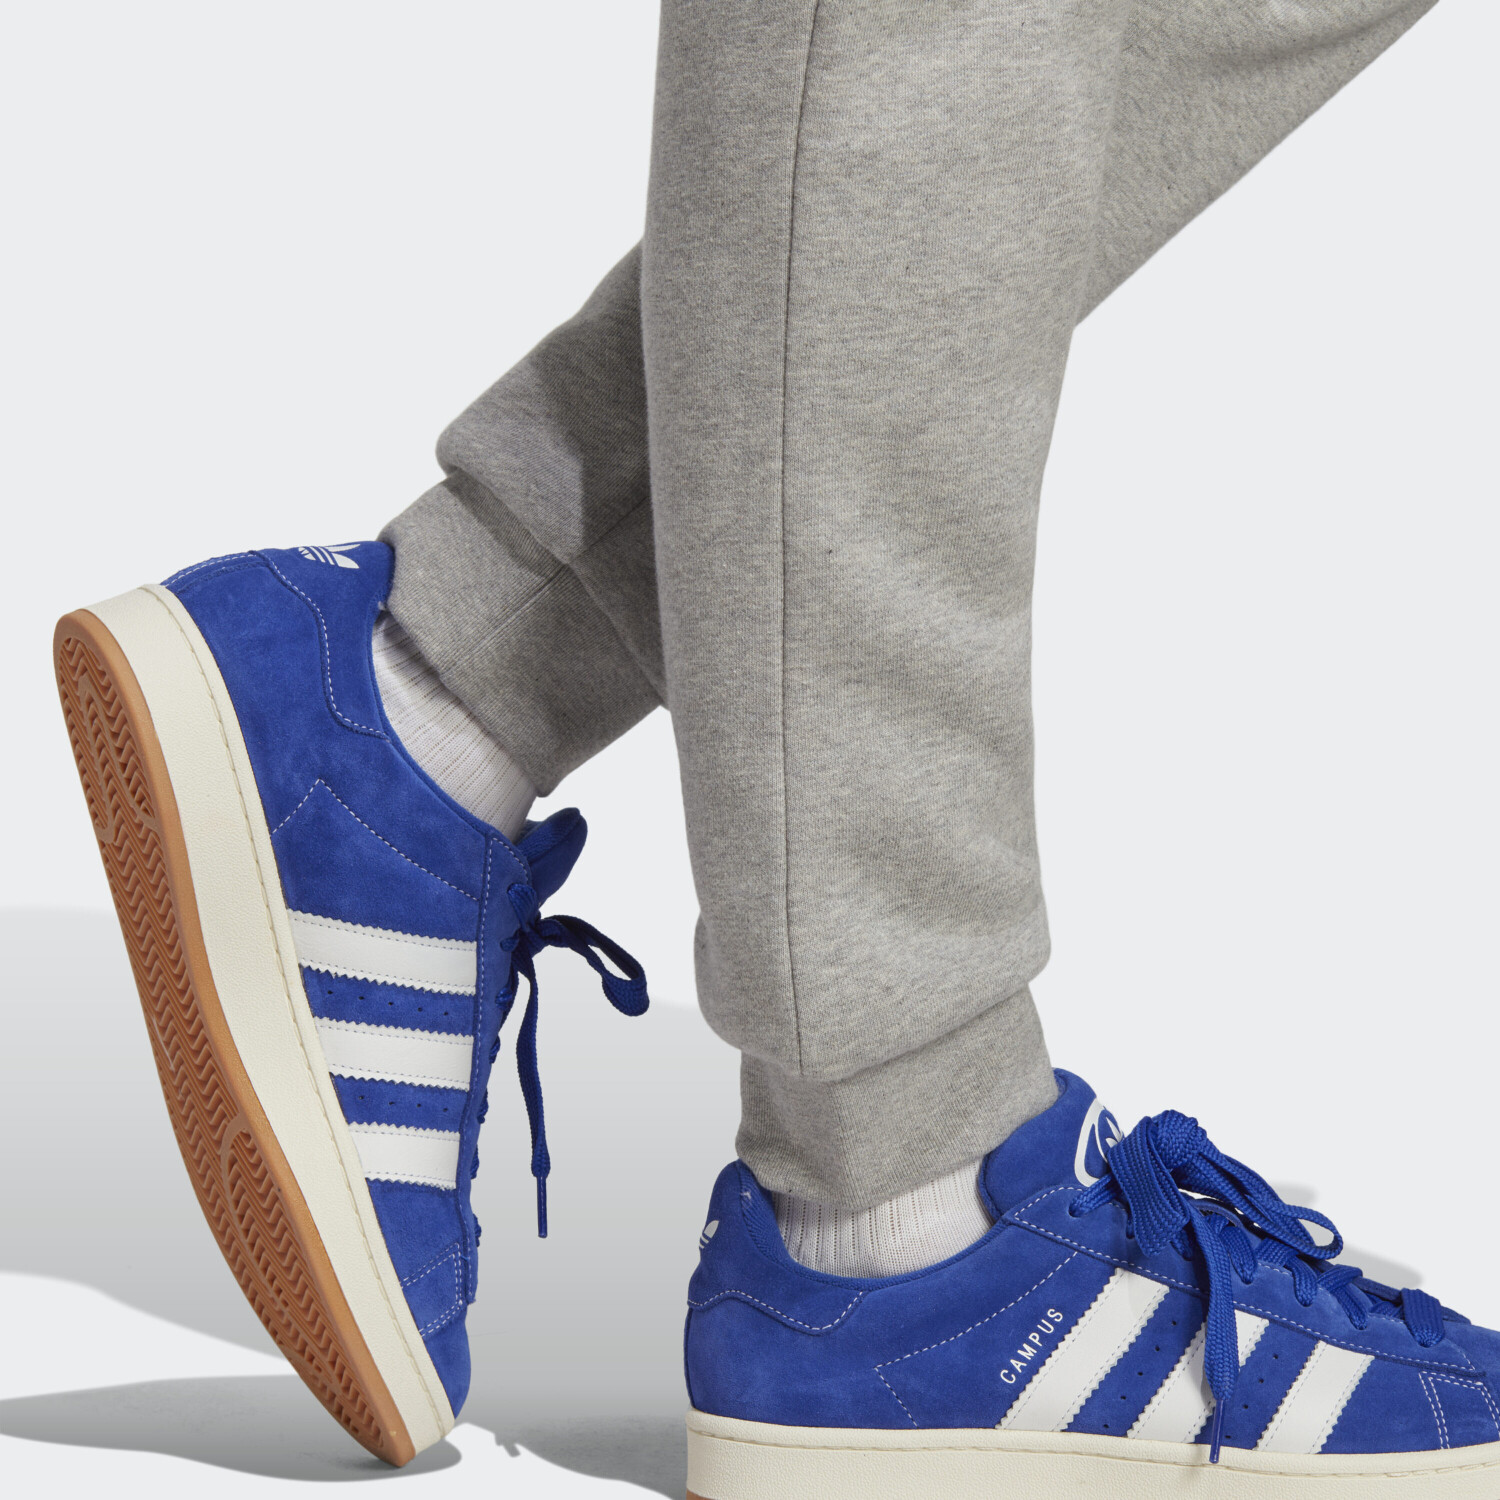 Adidas Trefoil Essentials Hose (IA4833) medium grey heather ab 30,99 € |  Preisvergleich bei